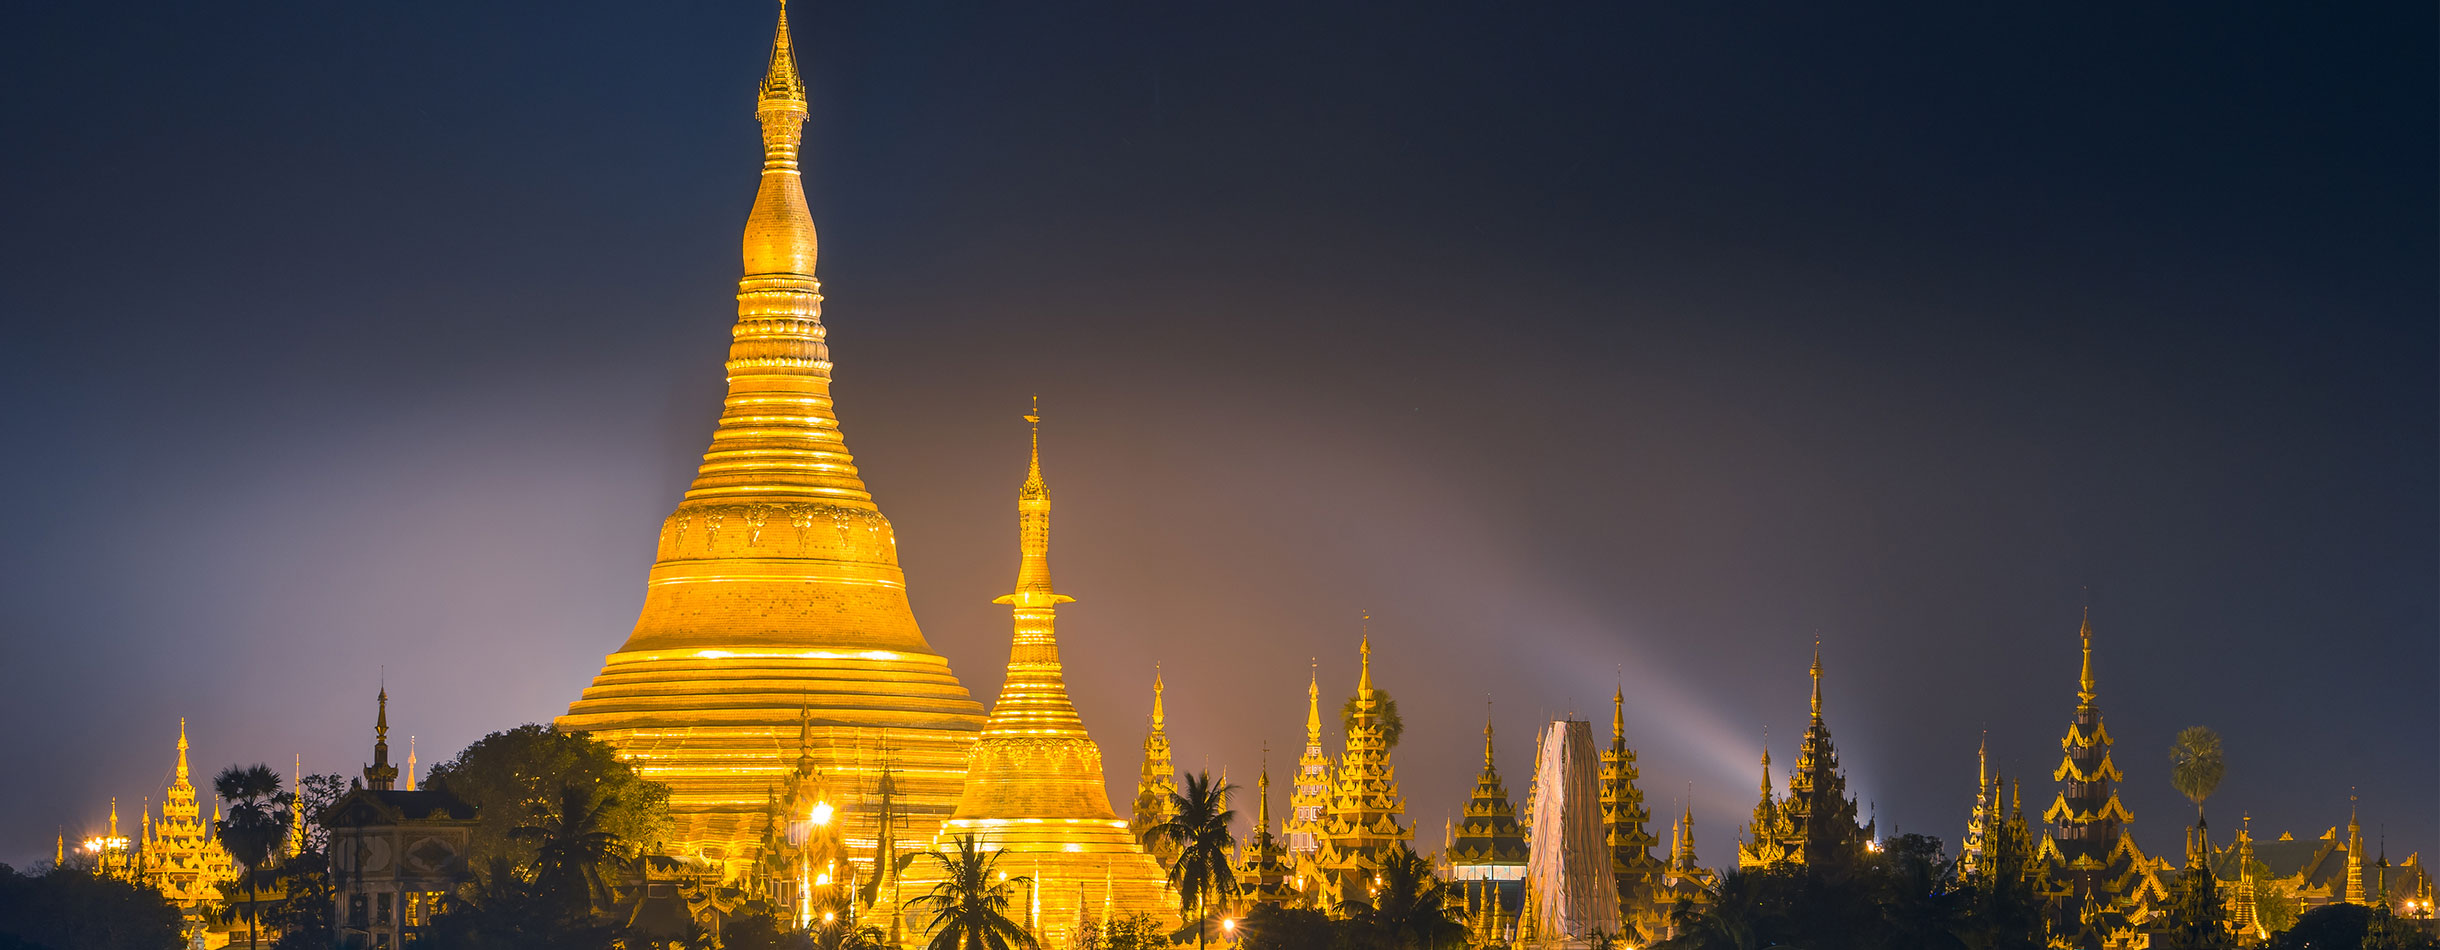 Beautiful Shwedagon pagoda in the night, Yangon, Myanmar, Asia